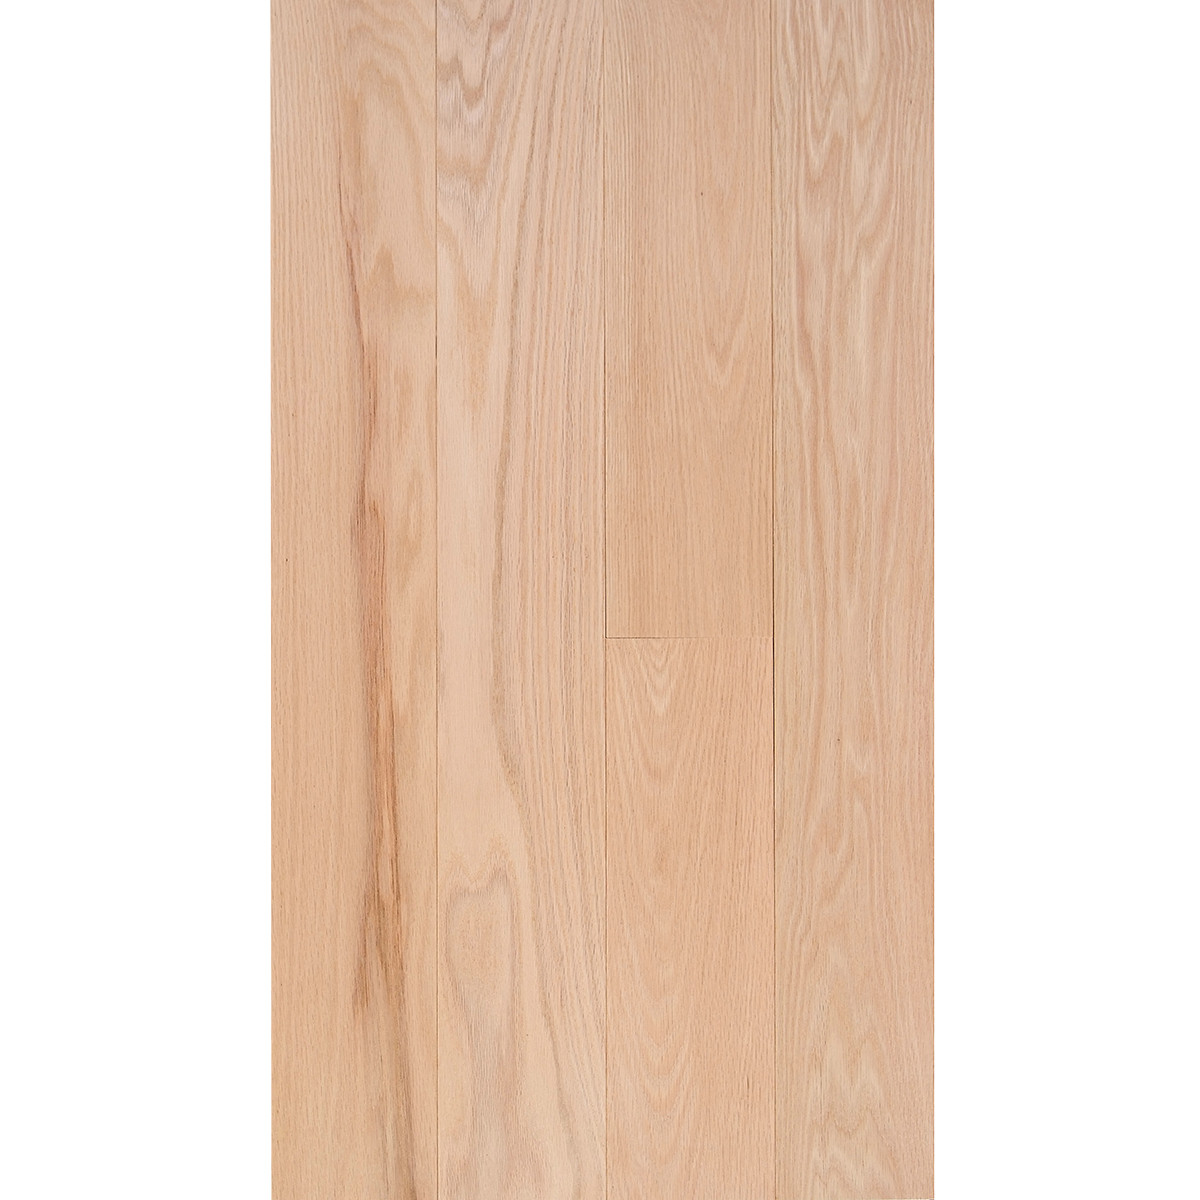 maple hardwood floor stain colors of red oak 3 4 x 5 select grade flooring for fs 5 redoak select em flooring